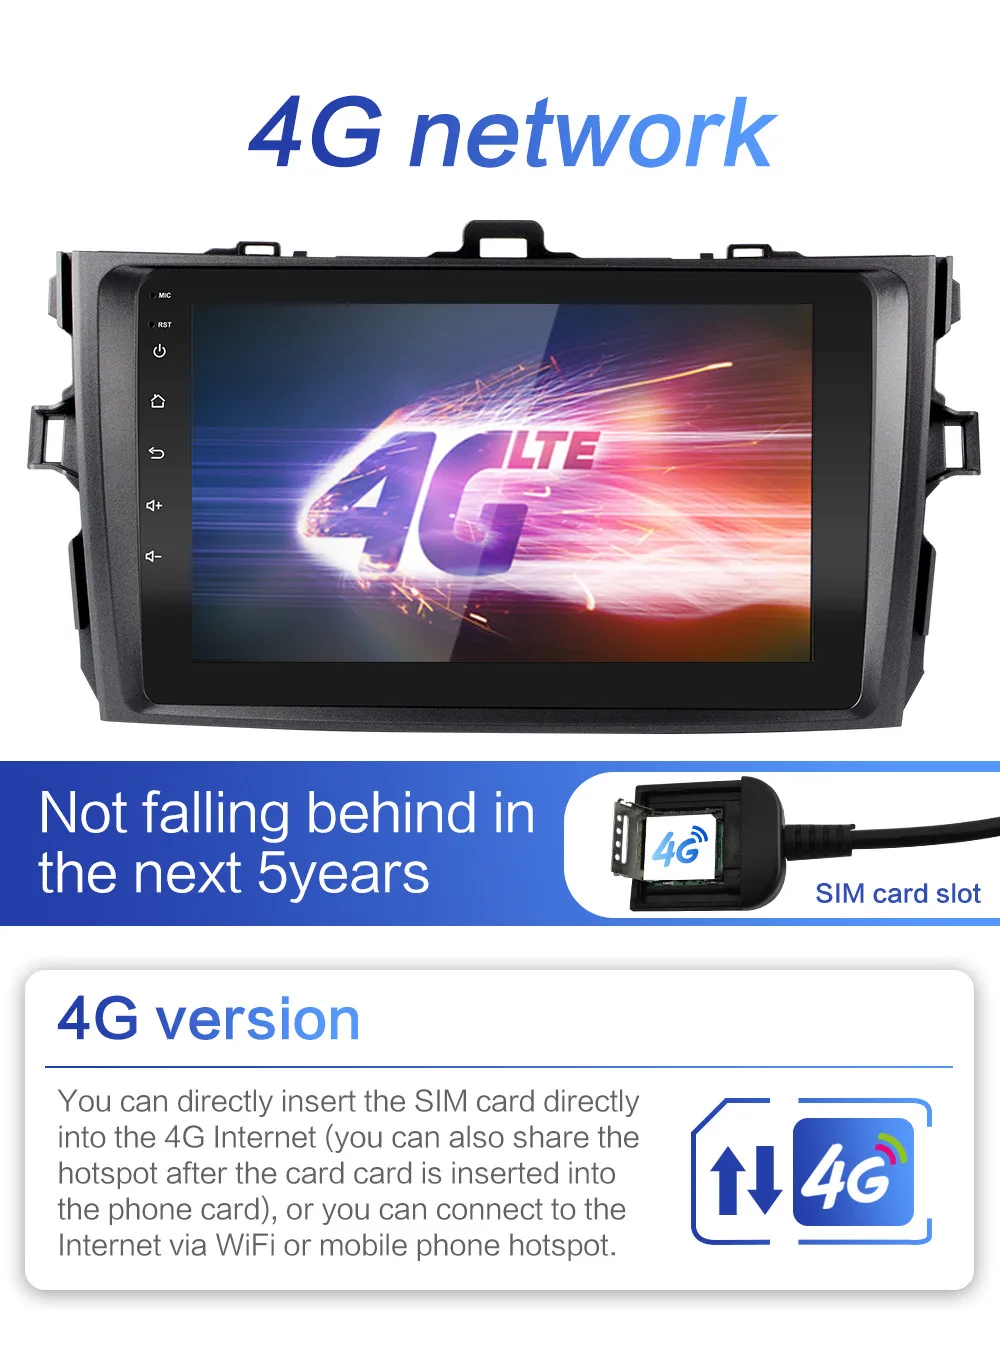 2G+ 32G DSP 2 din Android 8,1 4G сеть для автомобиля Радио Мультимедийный видеоплеер для Защитные чехлы для сидений, сшитые специально для Toyota Corolla E140/150 2006 2007-2011, Wi-Fi, BT